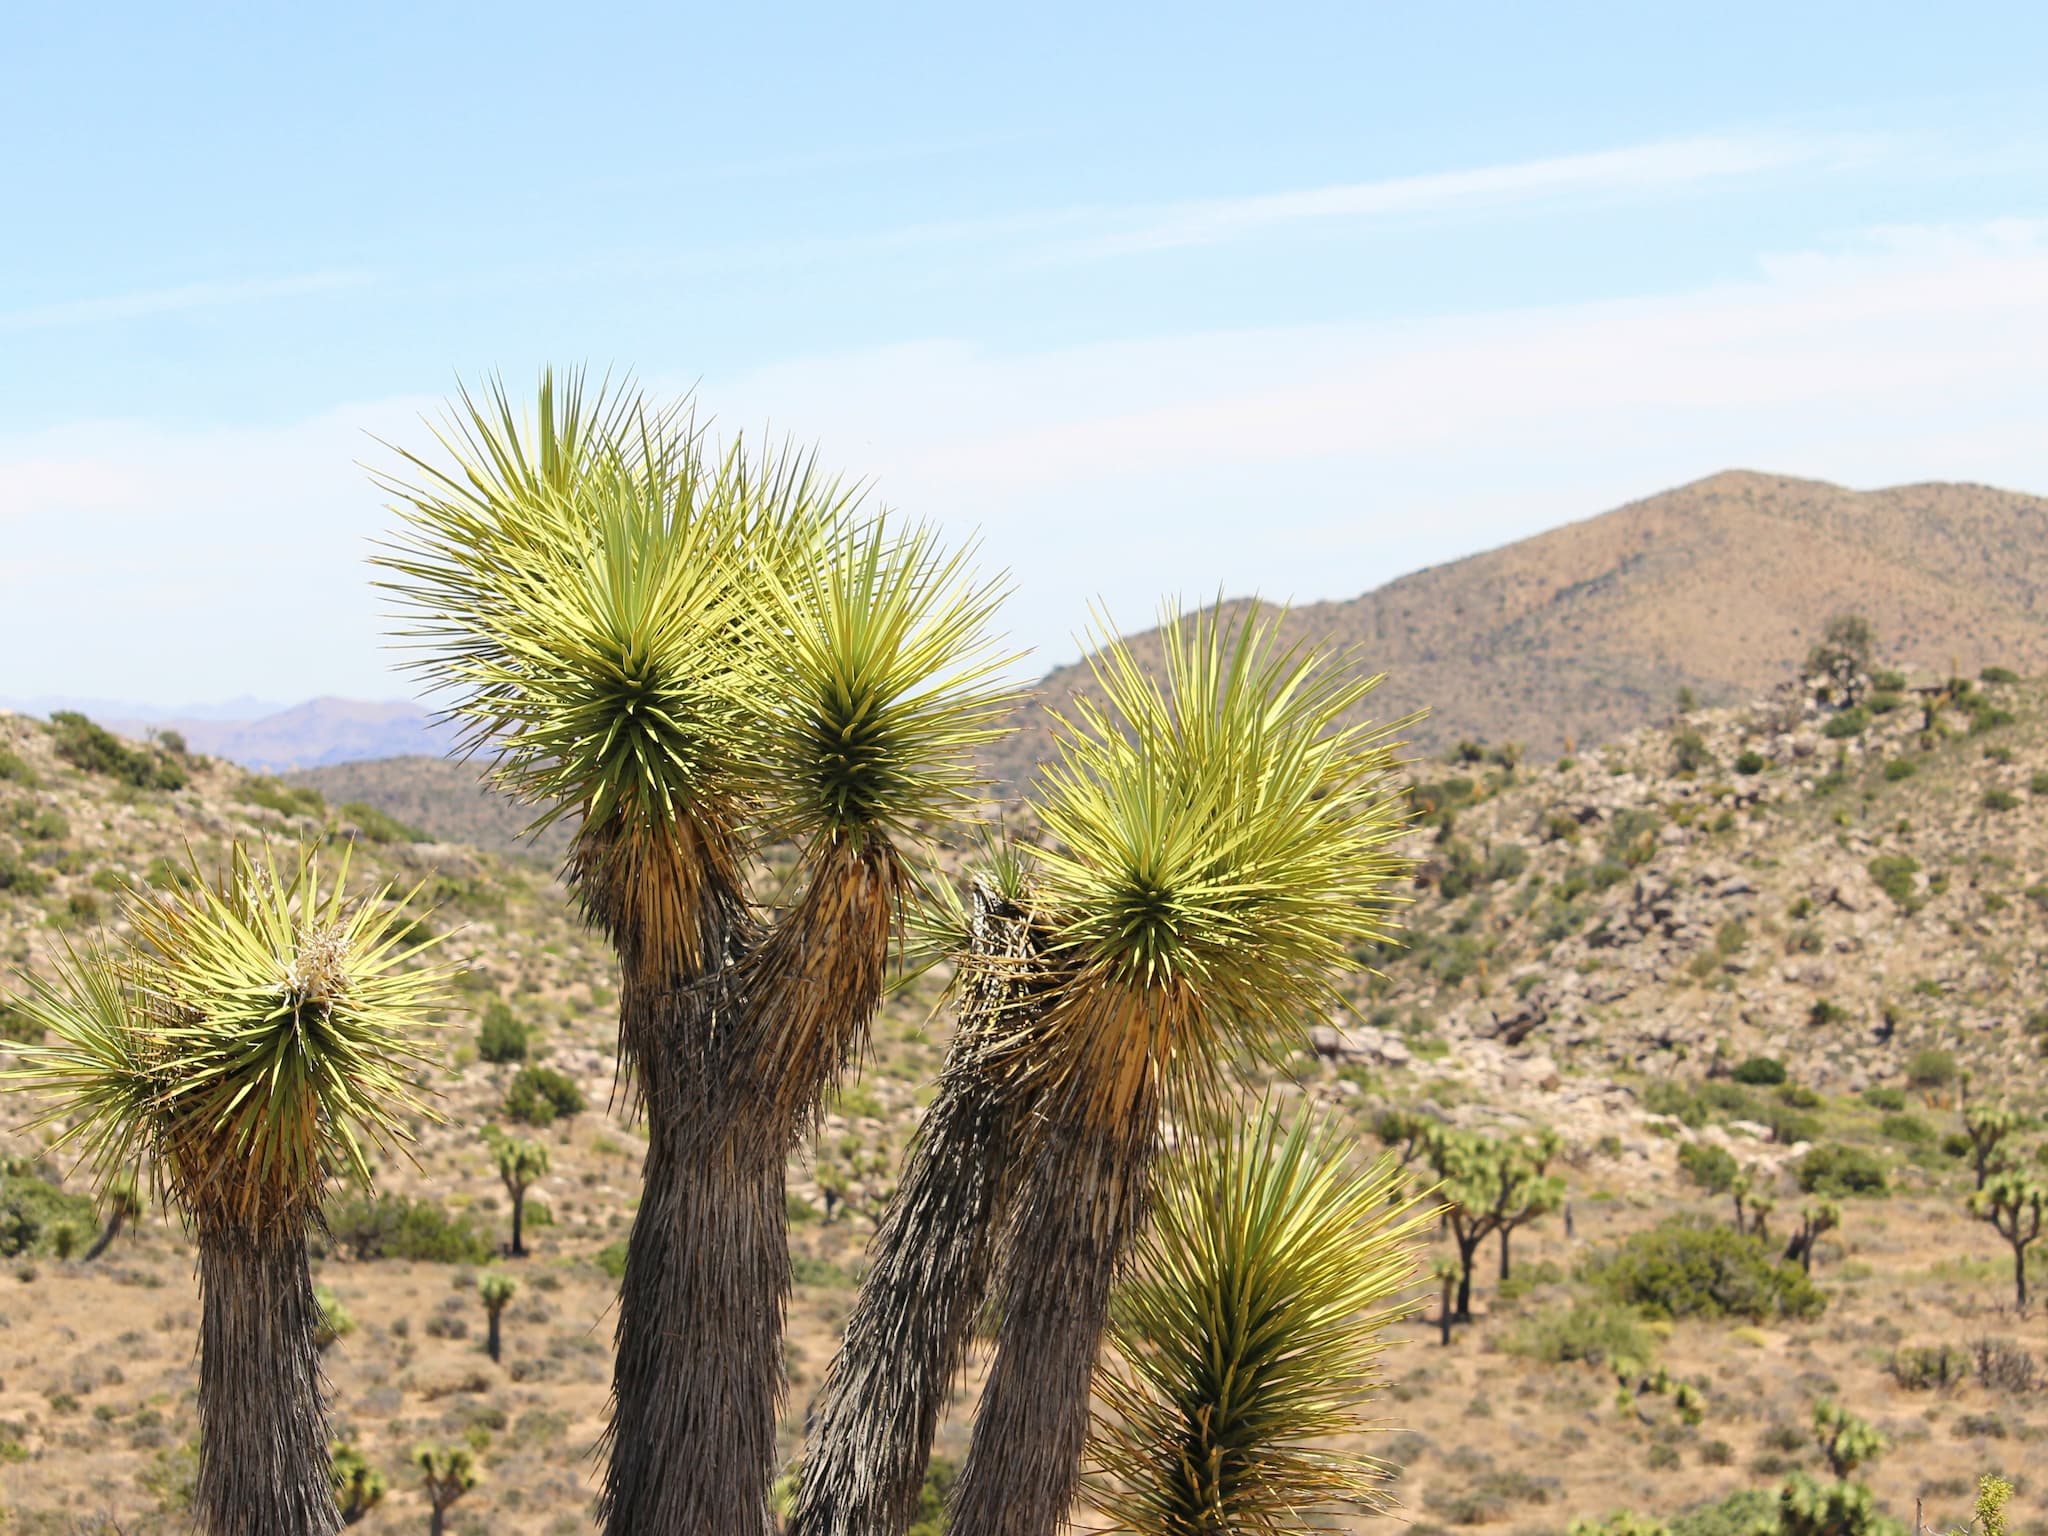 Spiky joshua trees with an arid, mountainous backdrop.